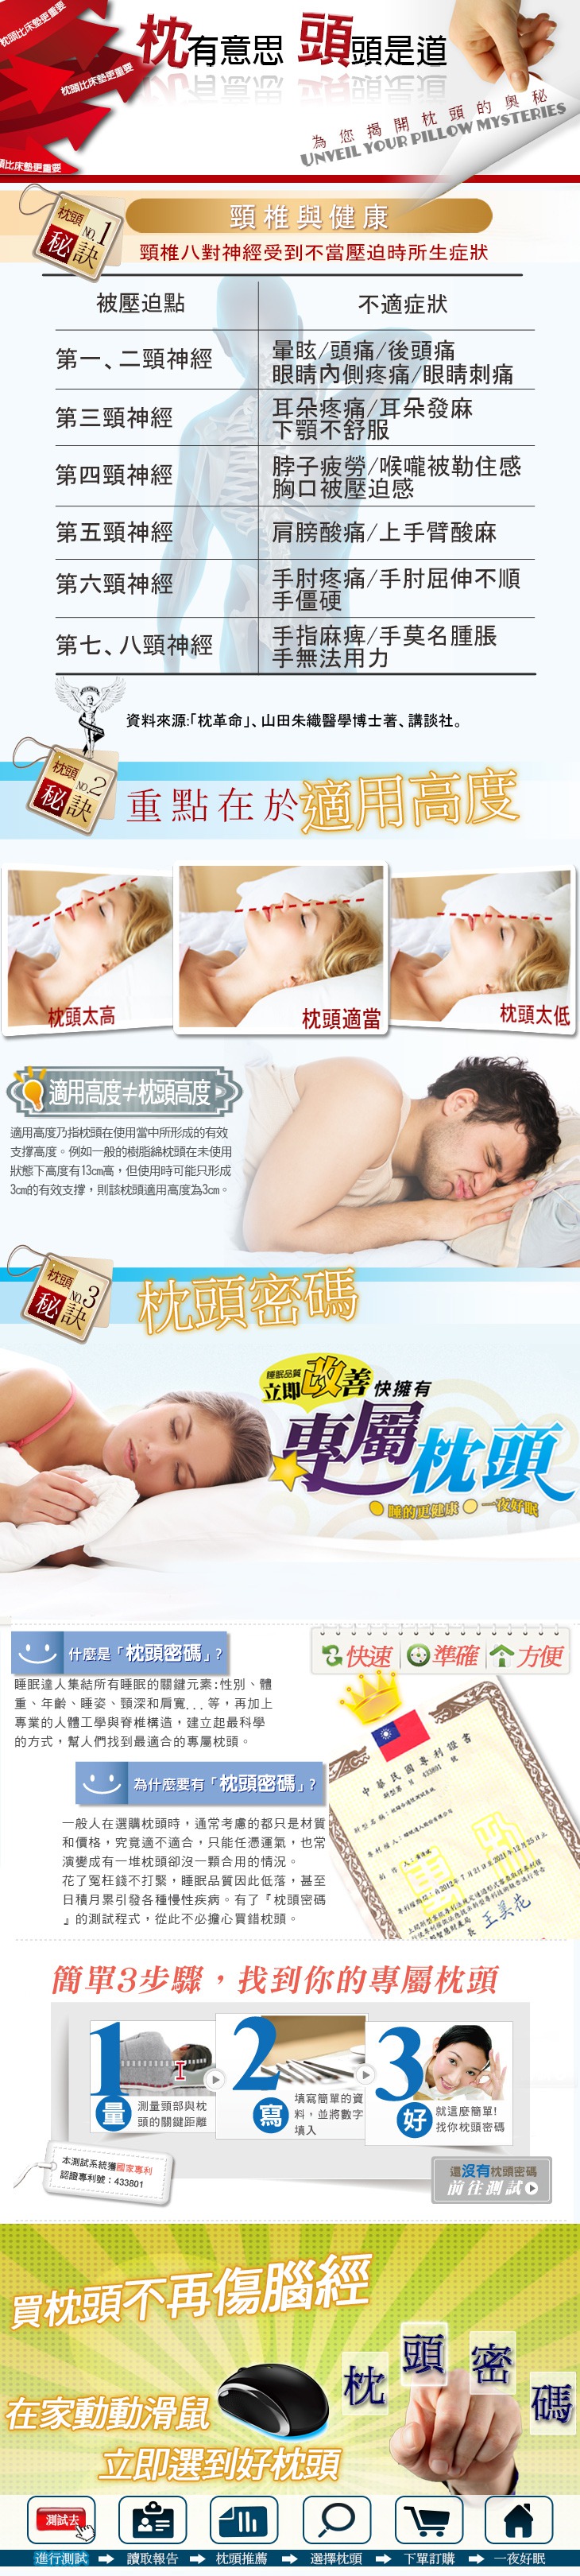 如何挑選枕頭 枕頭密碼 記憶枕 乳膠枕 失眠 睡不好 肩頸僵硬 手指麻痺 睡眠達人 頭痛頭暈